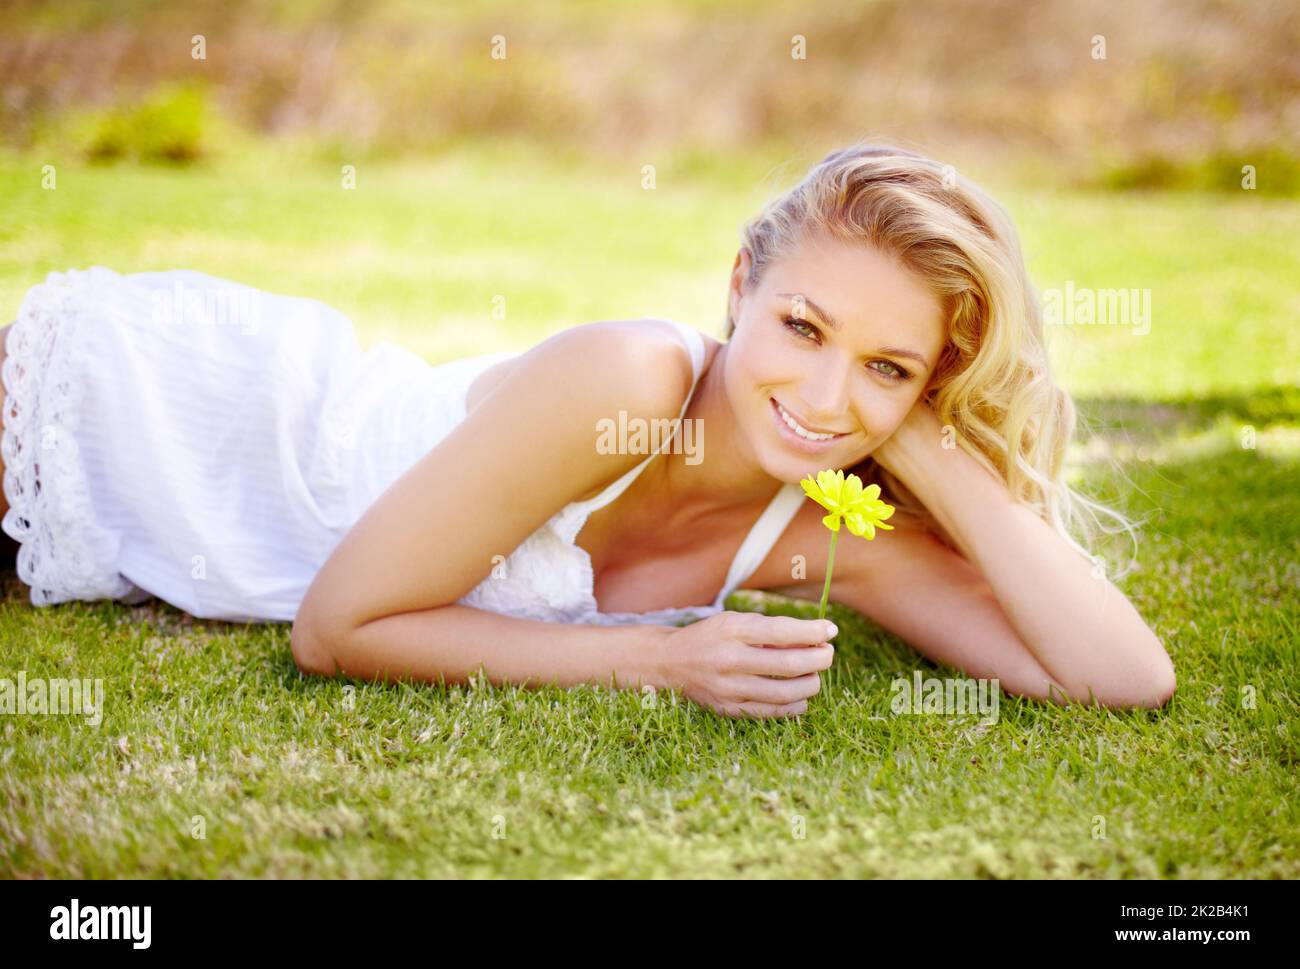 L'été est sa saison préférée. Superbe femme blonde détendue dans son jardin et tenant une Marguerite jaune. Banque D'Images